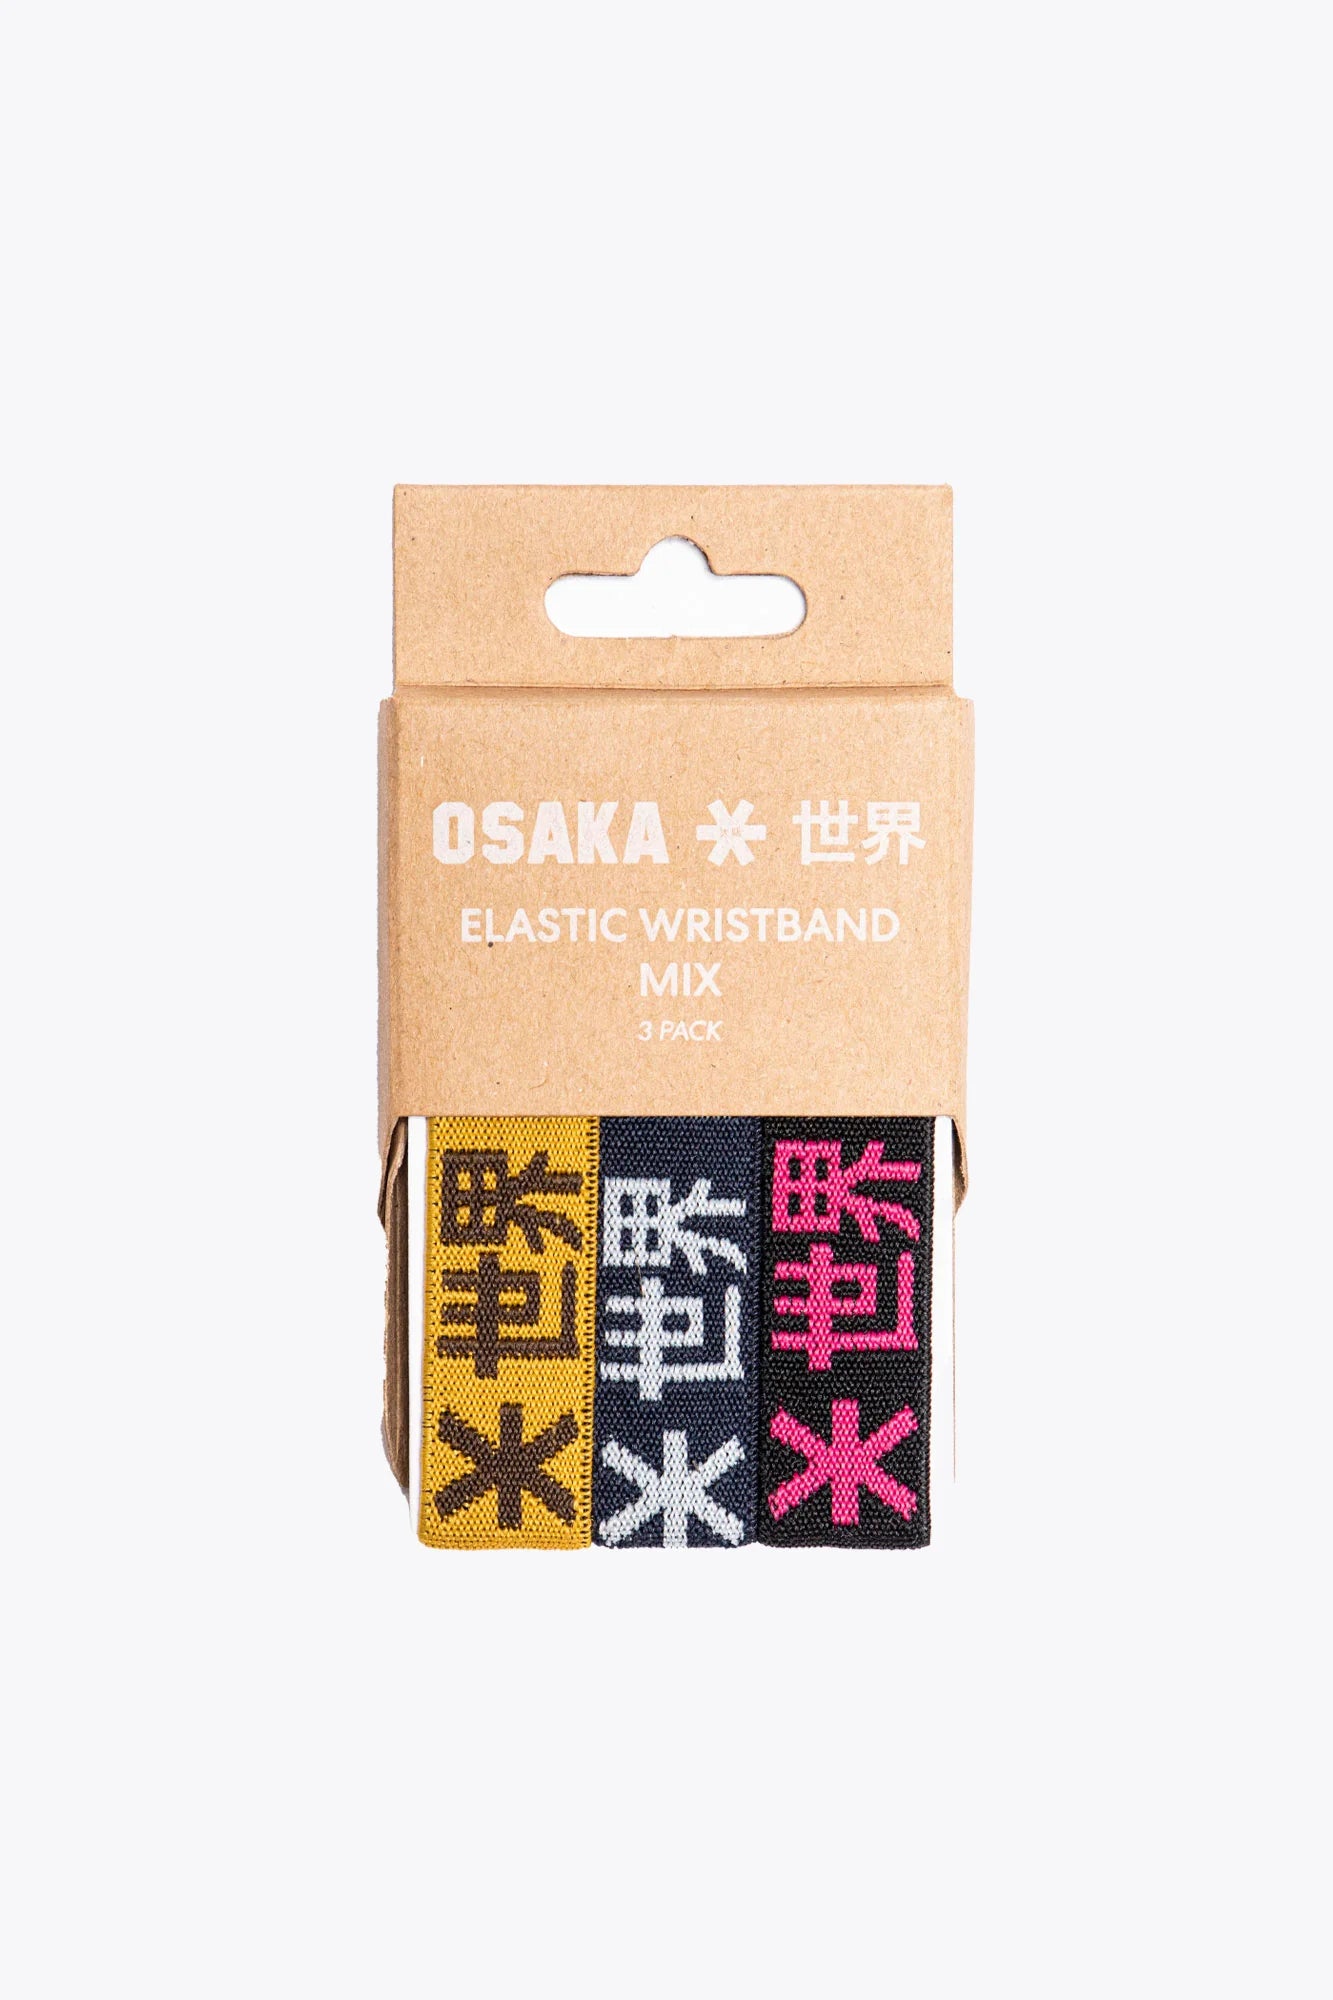 Osaka Elastic Bracelet Mix